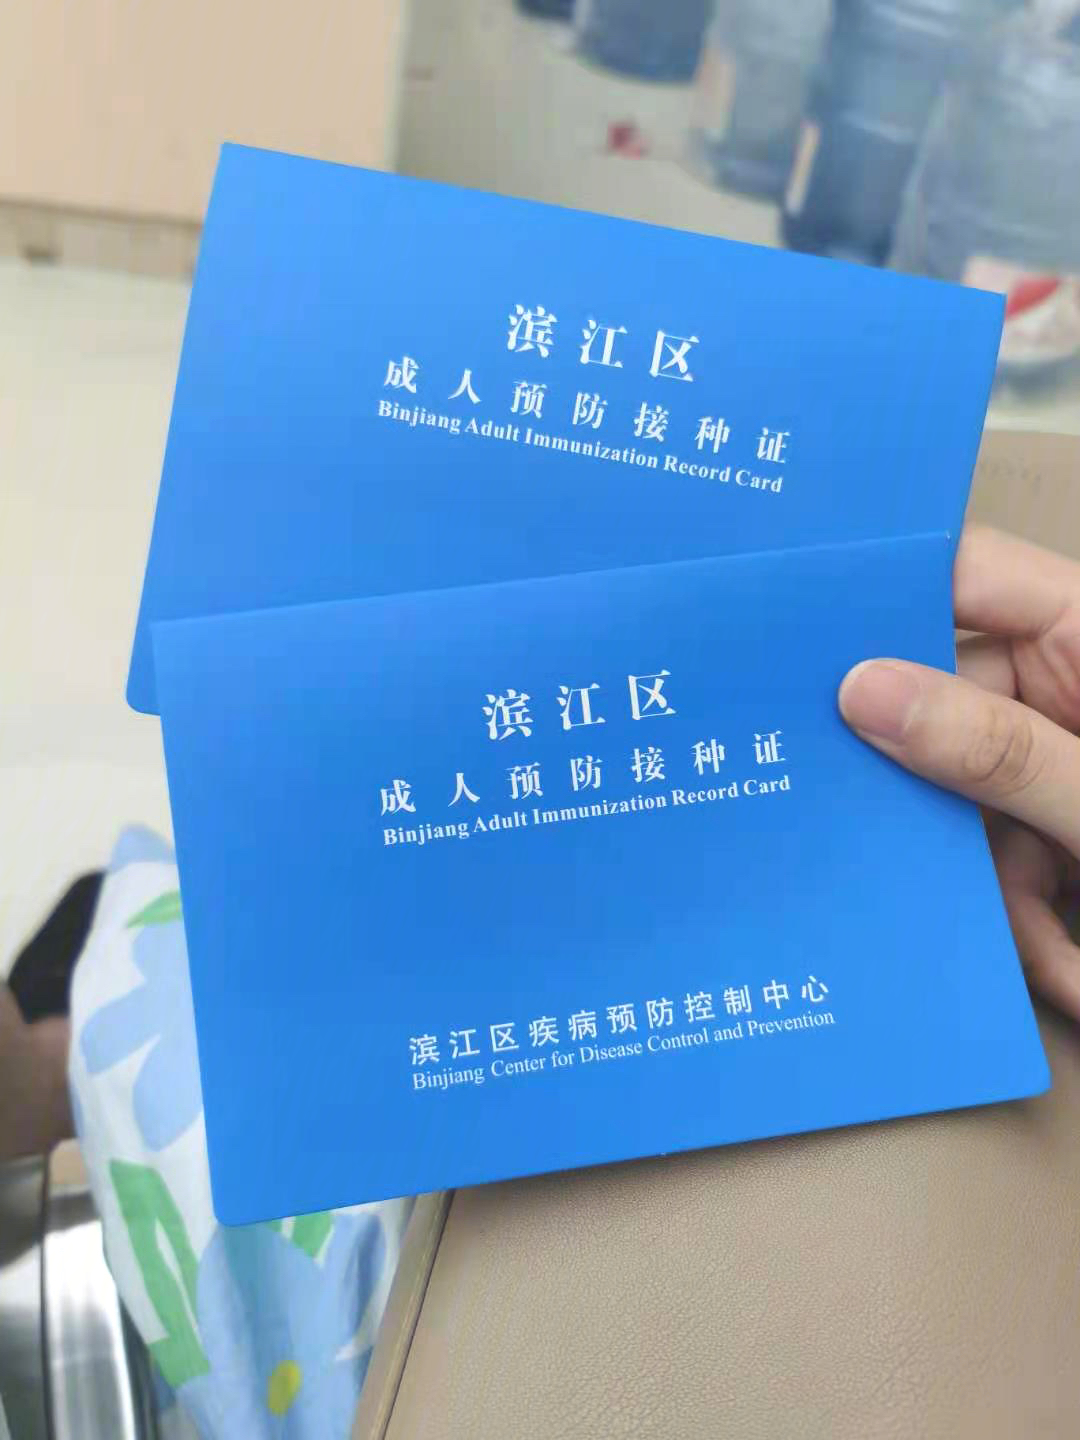 北京新冠疫苗接种证明图片